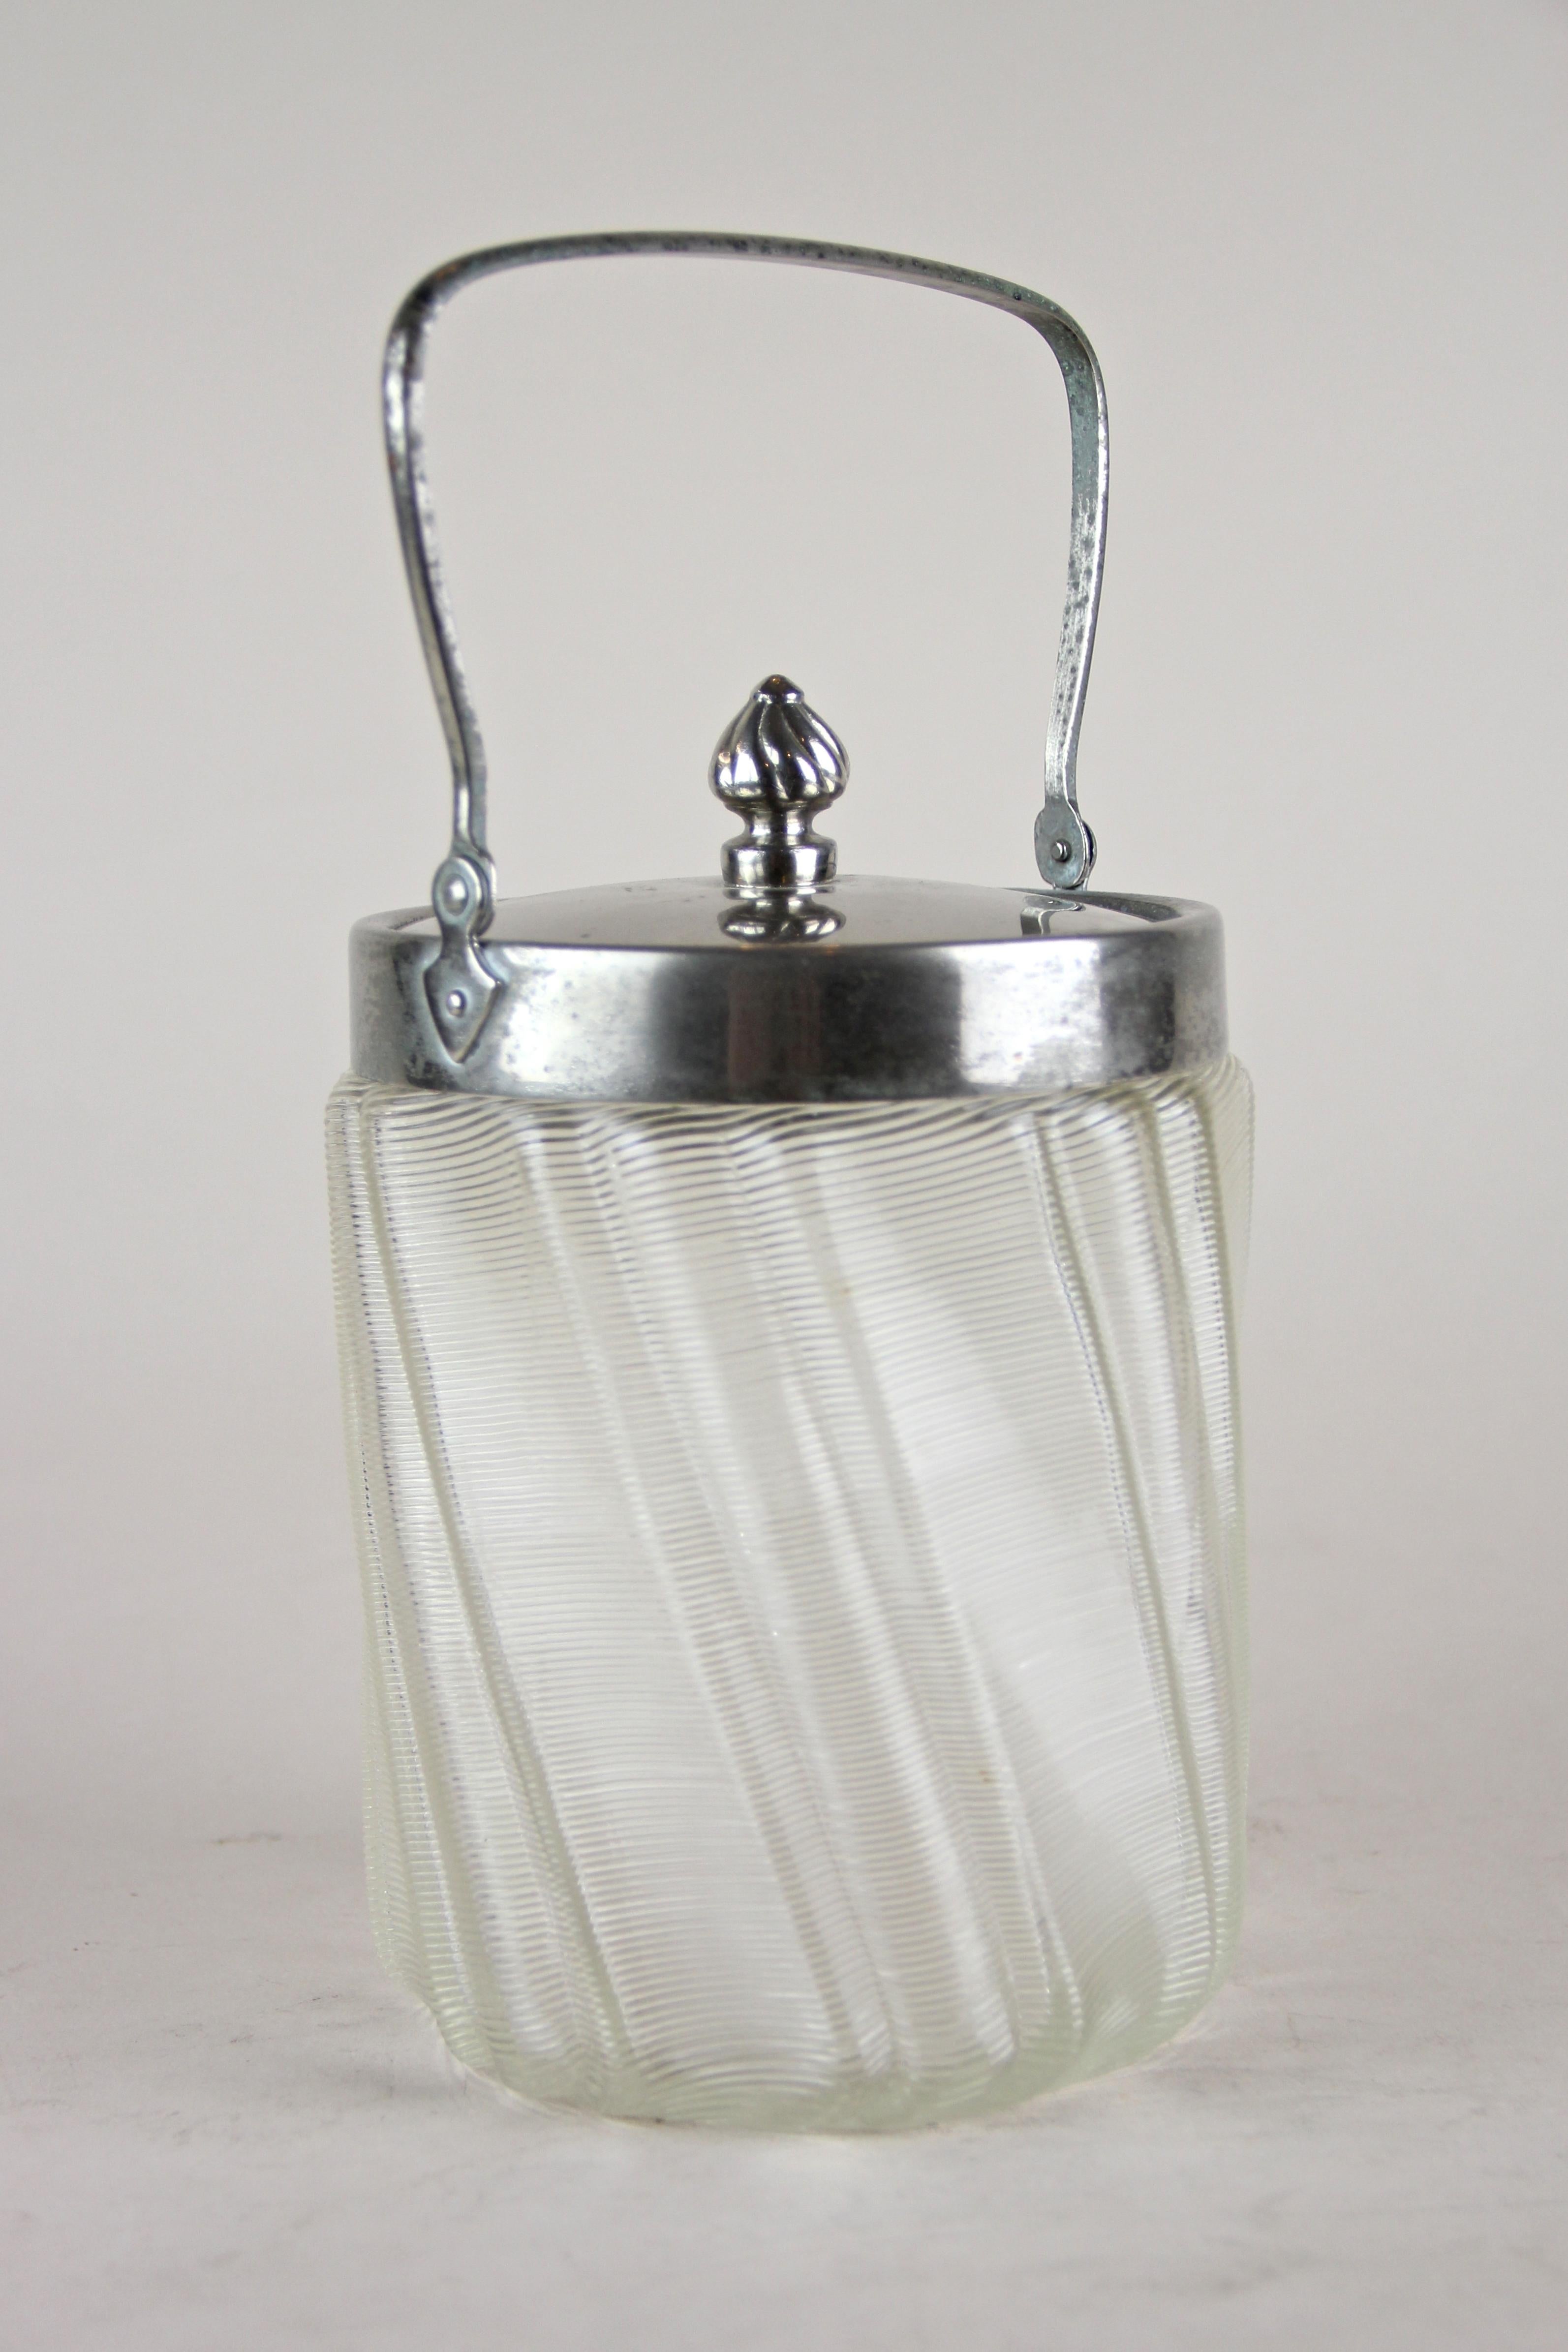 Joli bocal en verre avec couvercle chromé du début du 20e siècle en provenance d'Autriche. Le corps en verre de belle forme semble avoir été tordu et présente une surface artistique avec des fils de verre. Le couvercle chromé amovible, doté d'un